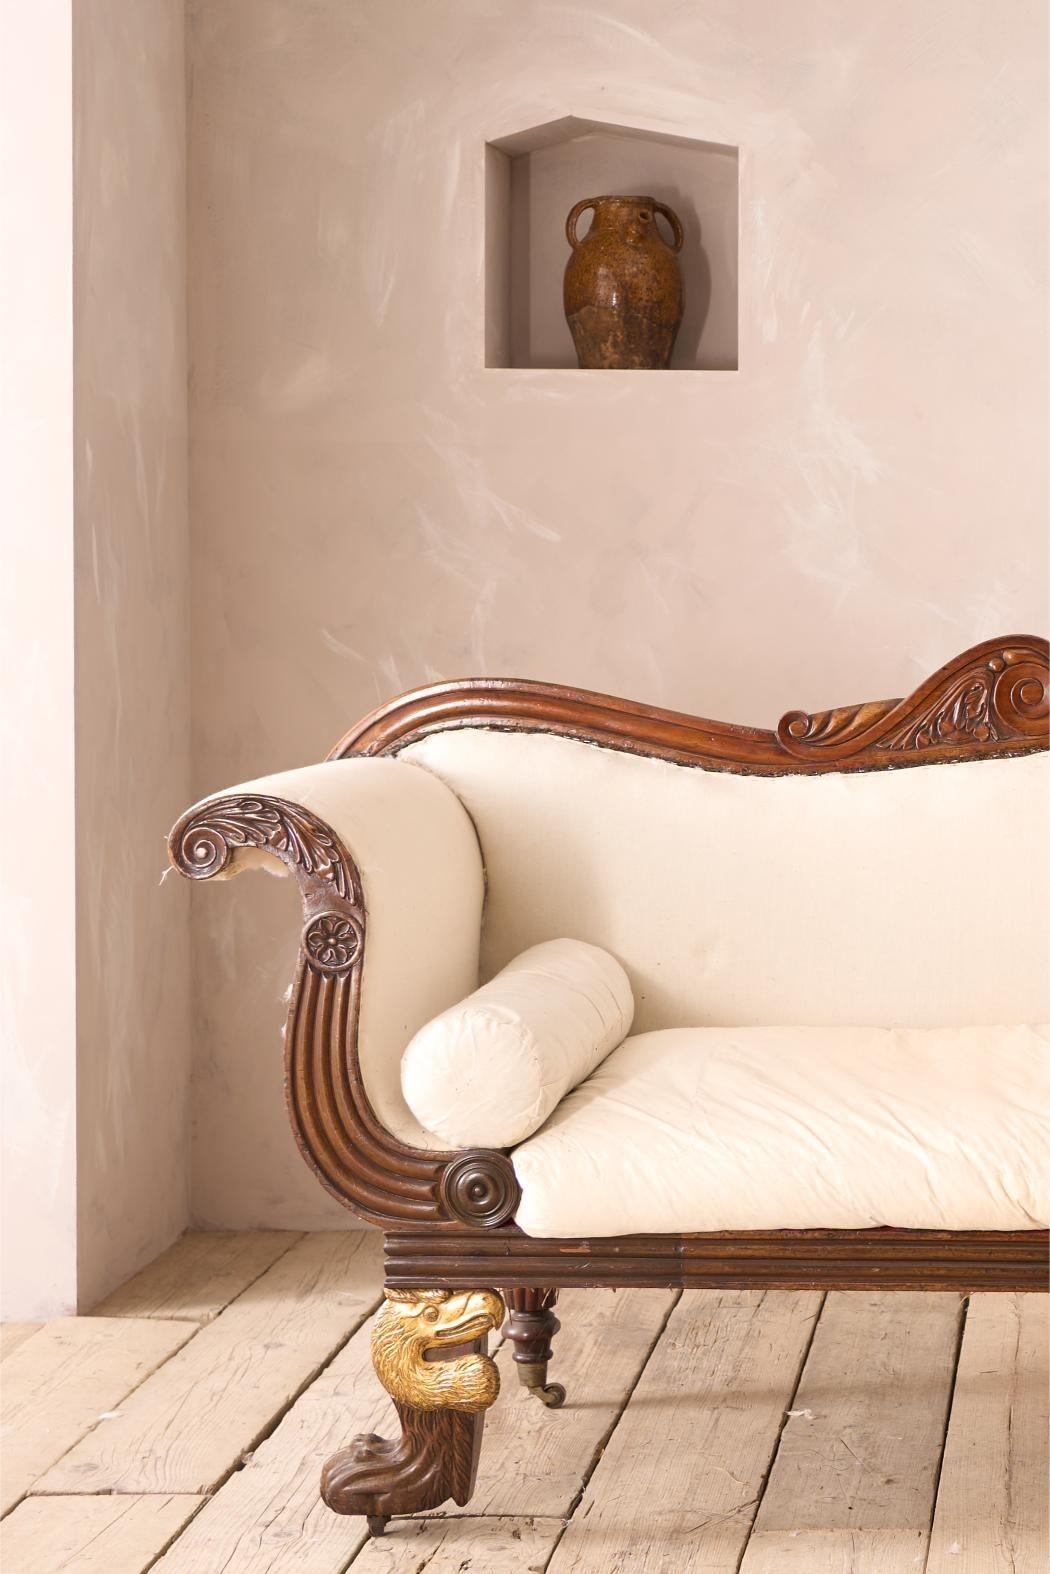 Dies ist ein wirklich außergewöhnliches englisches Landhaussofa aus der Regency-Zeit. Das Design und die Größe sind fabelhaft, aber was es wirklich auszeichnet, sind die einzigartigen Dodo-Kopf-Details an den Beinen. So etwas habe ich noch nie